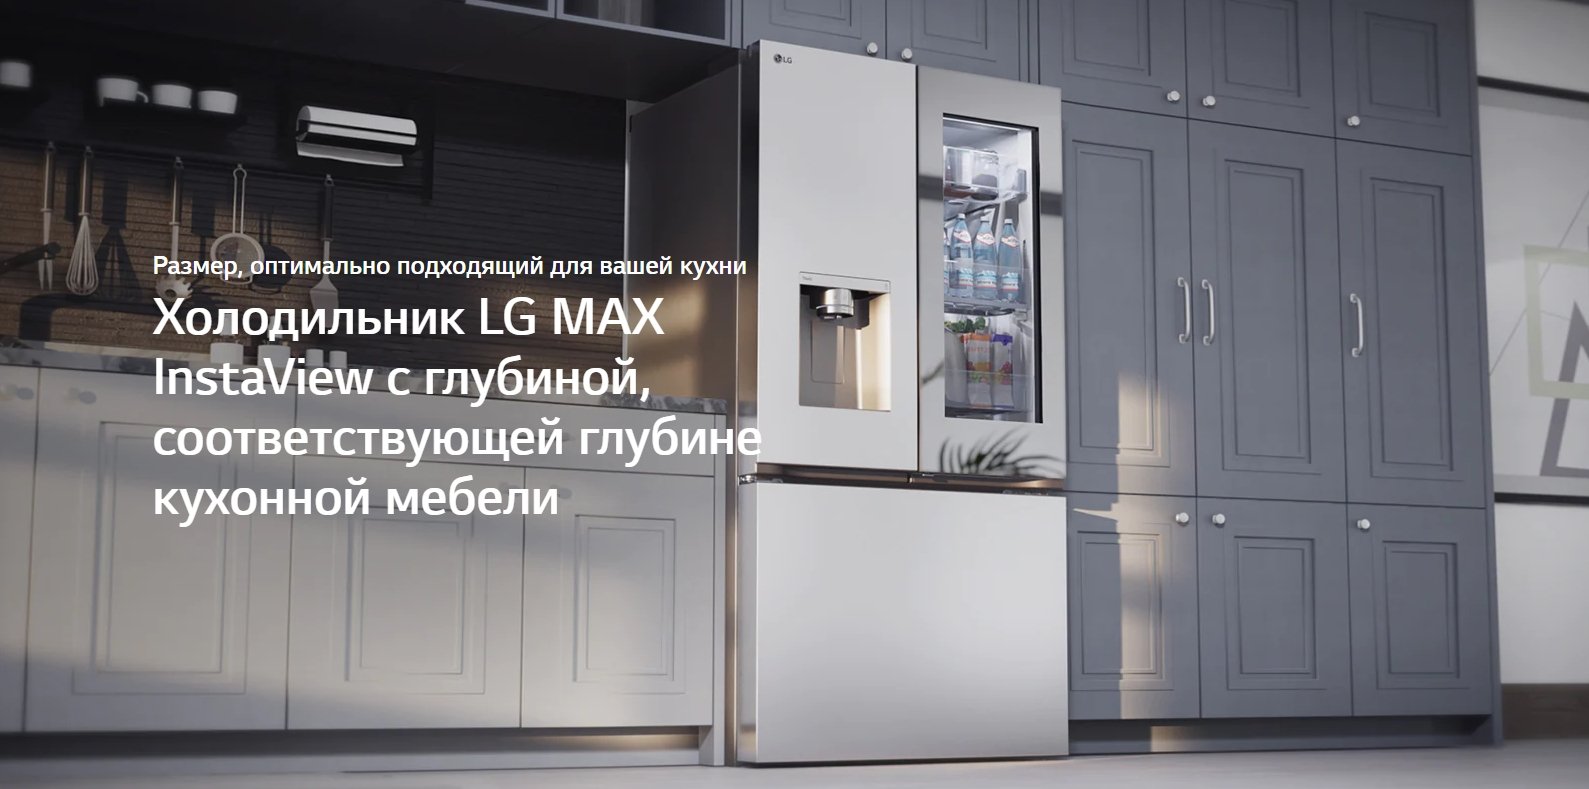 LG CES 2023 Холодильник LG MAX InstaView с глубиной, соответствующей глубине кухонной мебели LG Казахстан - Google Chrome.jpg